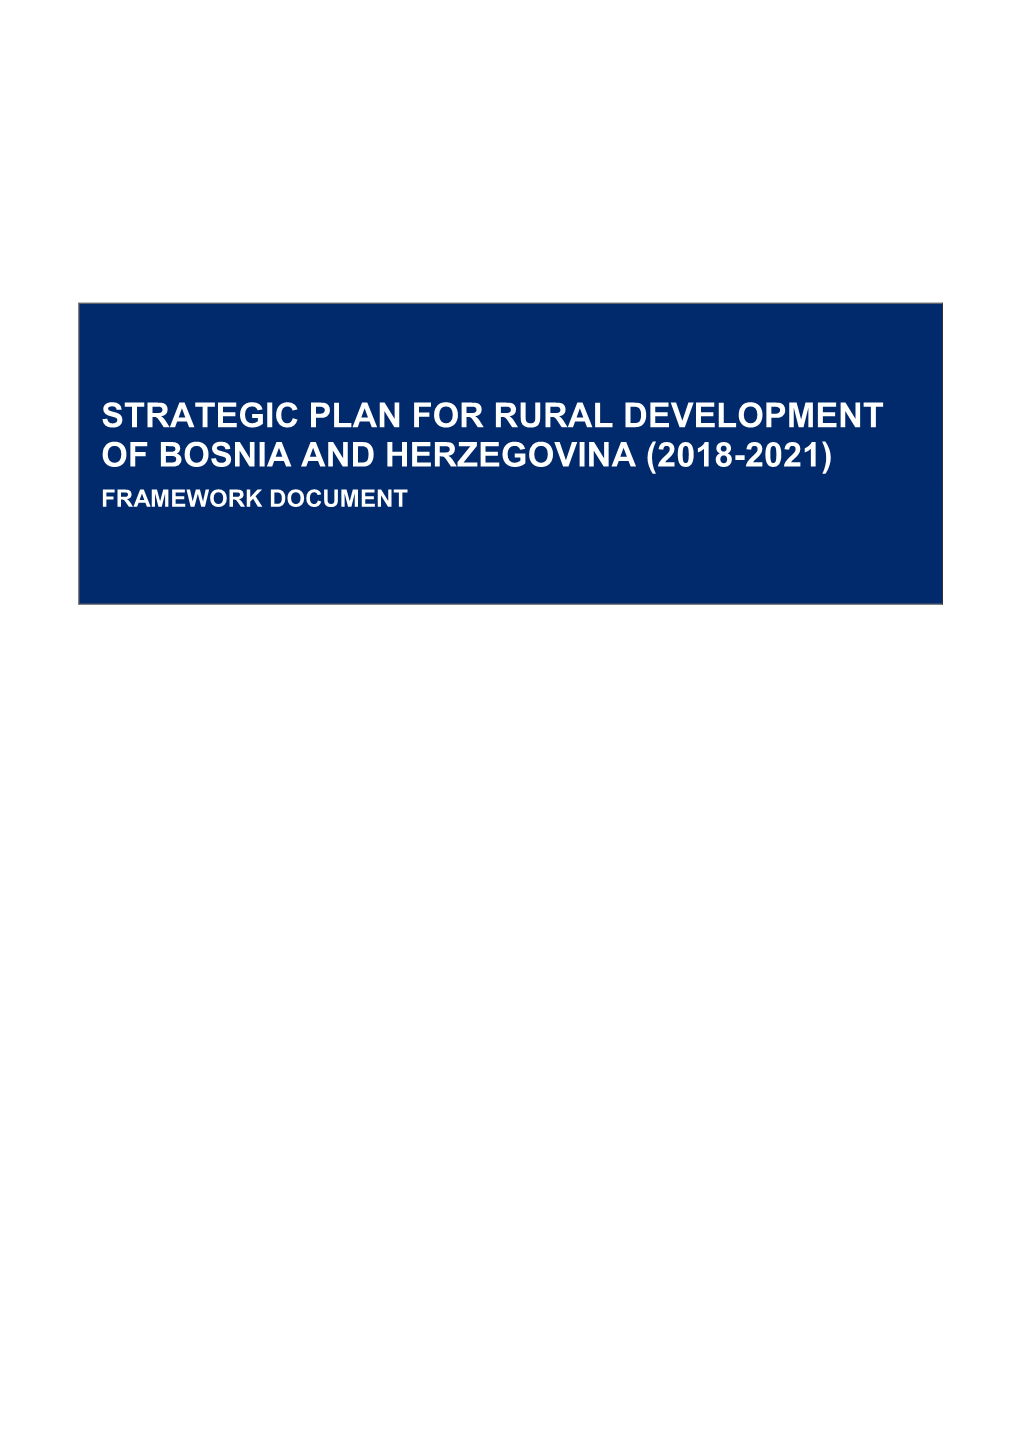 Strategic Plan for Rural Development of Bosnia and Herzegovina (2018-2021) Framework Document